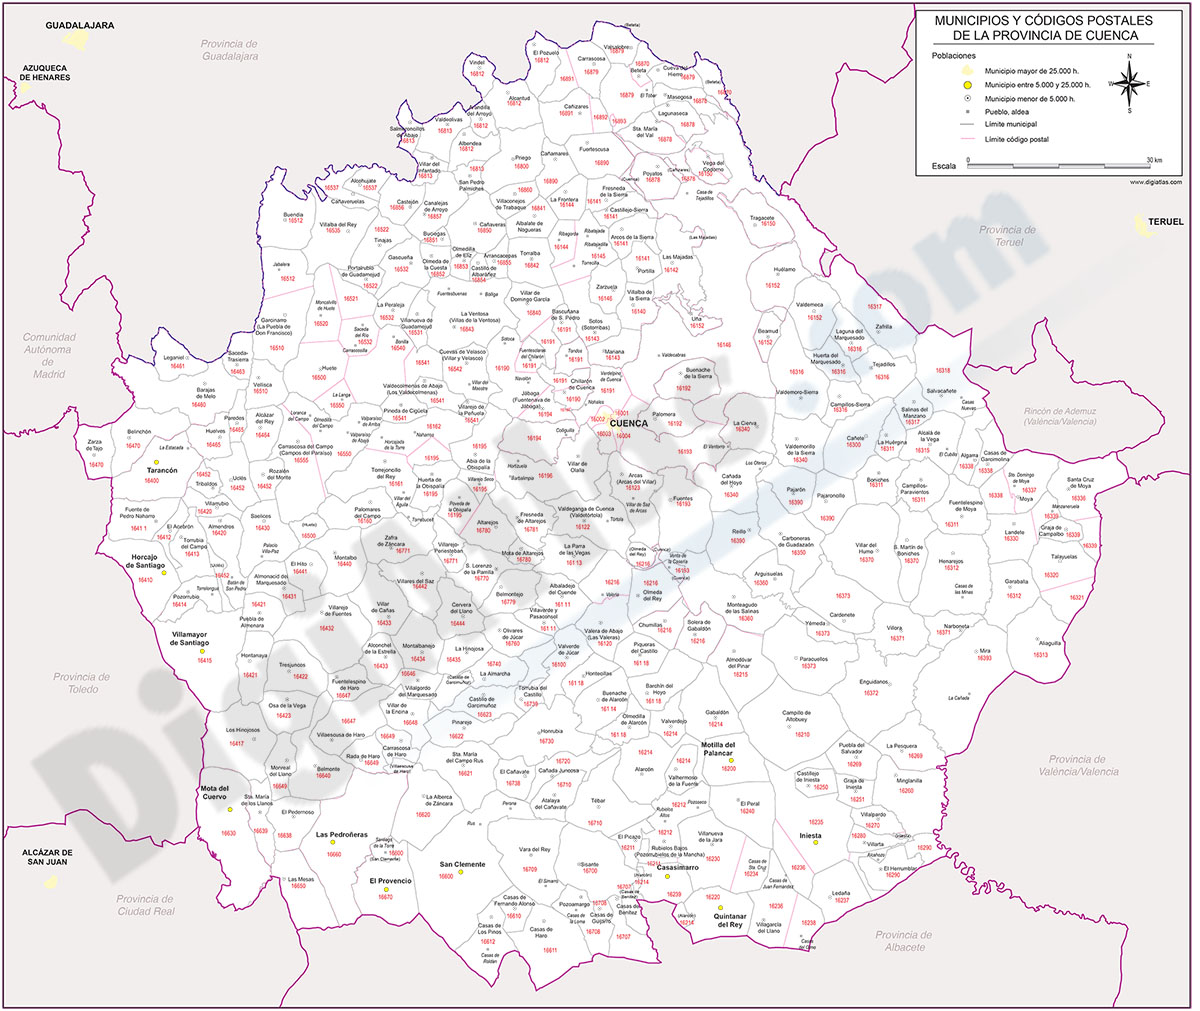 Cuenca - mapa provincial con municipios y Códigos Postales